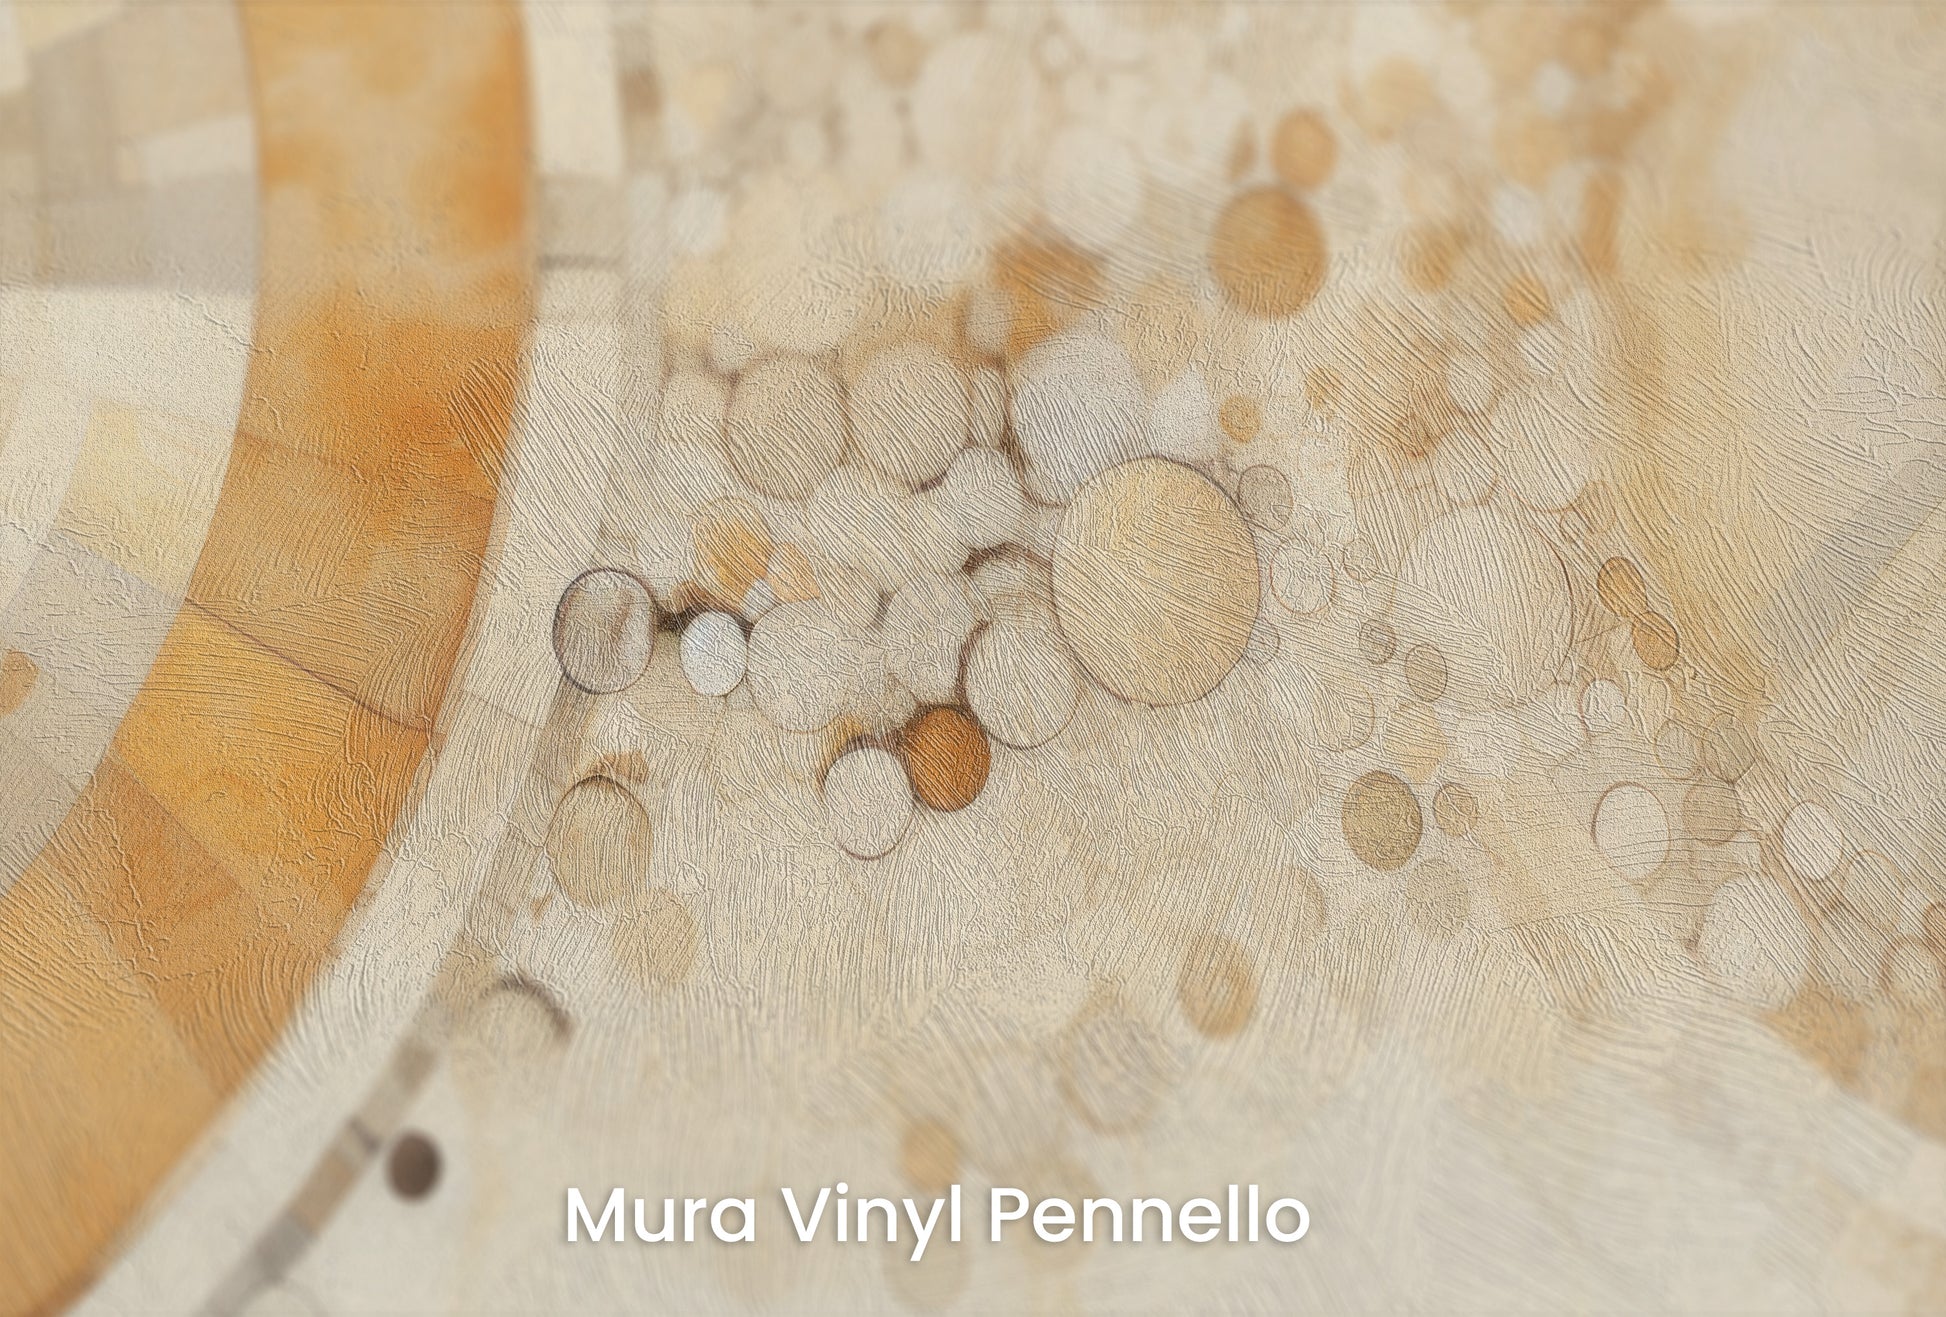 Zbliżenie na artystyczną fototapetę o nazwie ETHEREAL SPHERES AND RINGS na podłożu Mura Vinyl Pennello - faktura pociągnięć pędzla malarskiego.